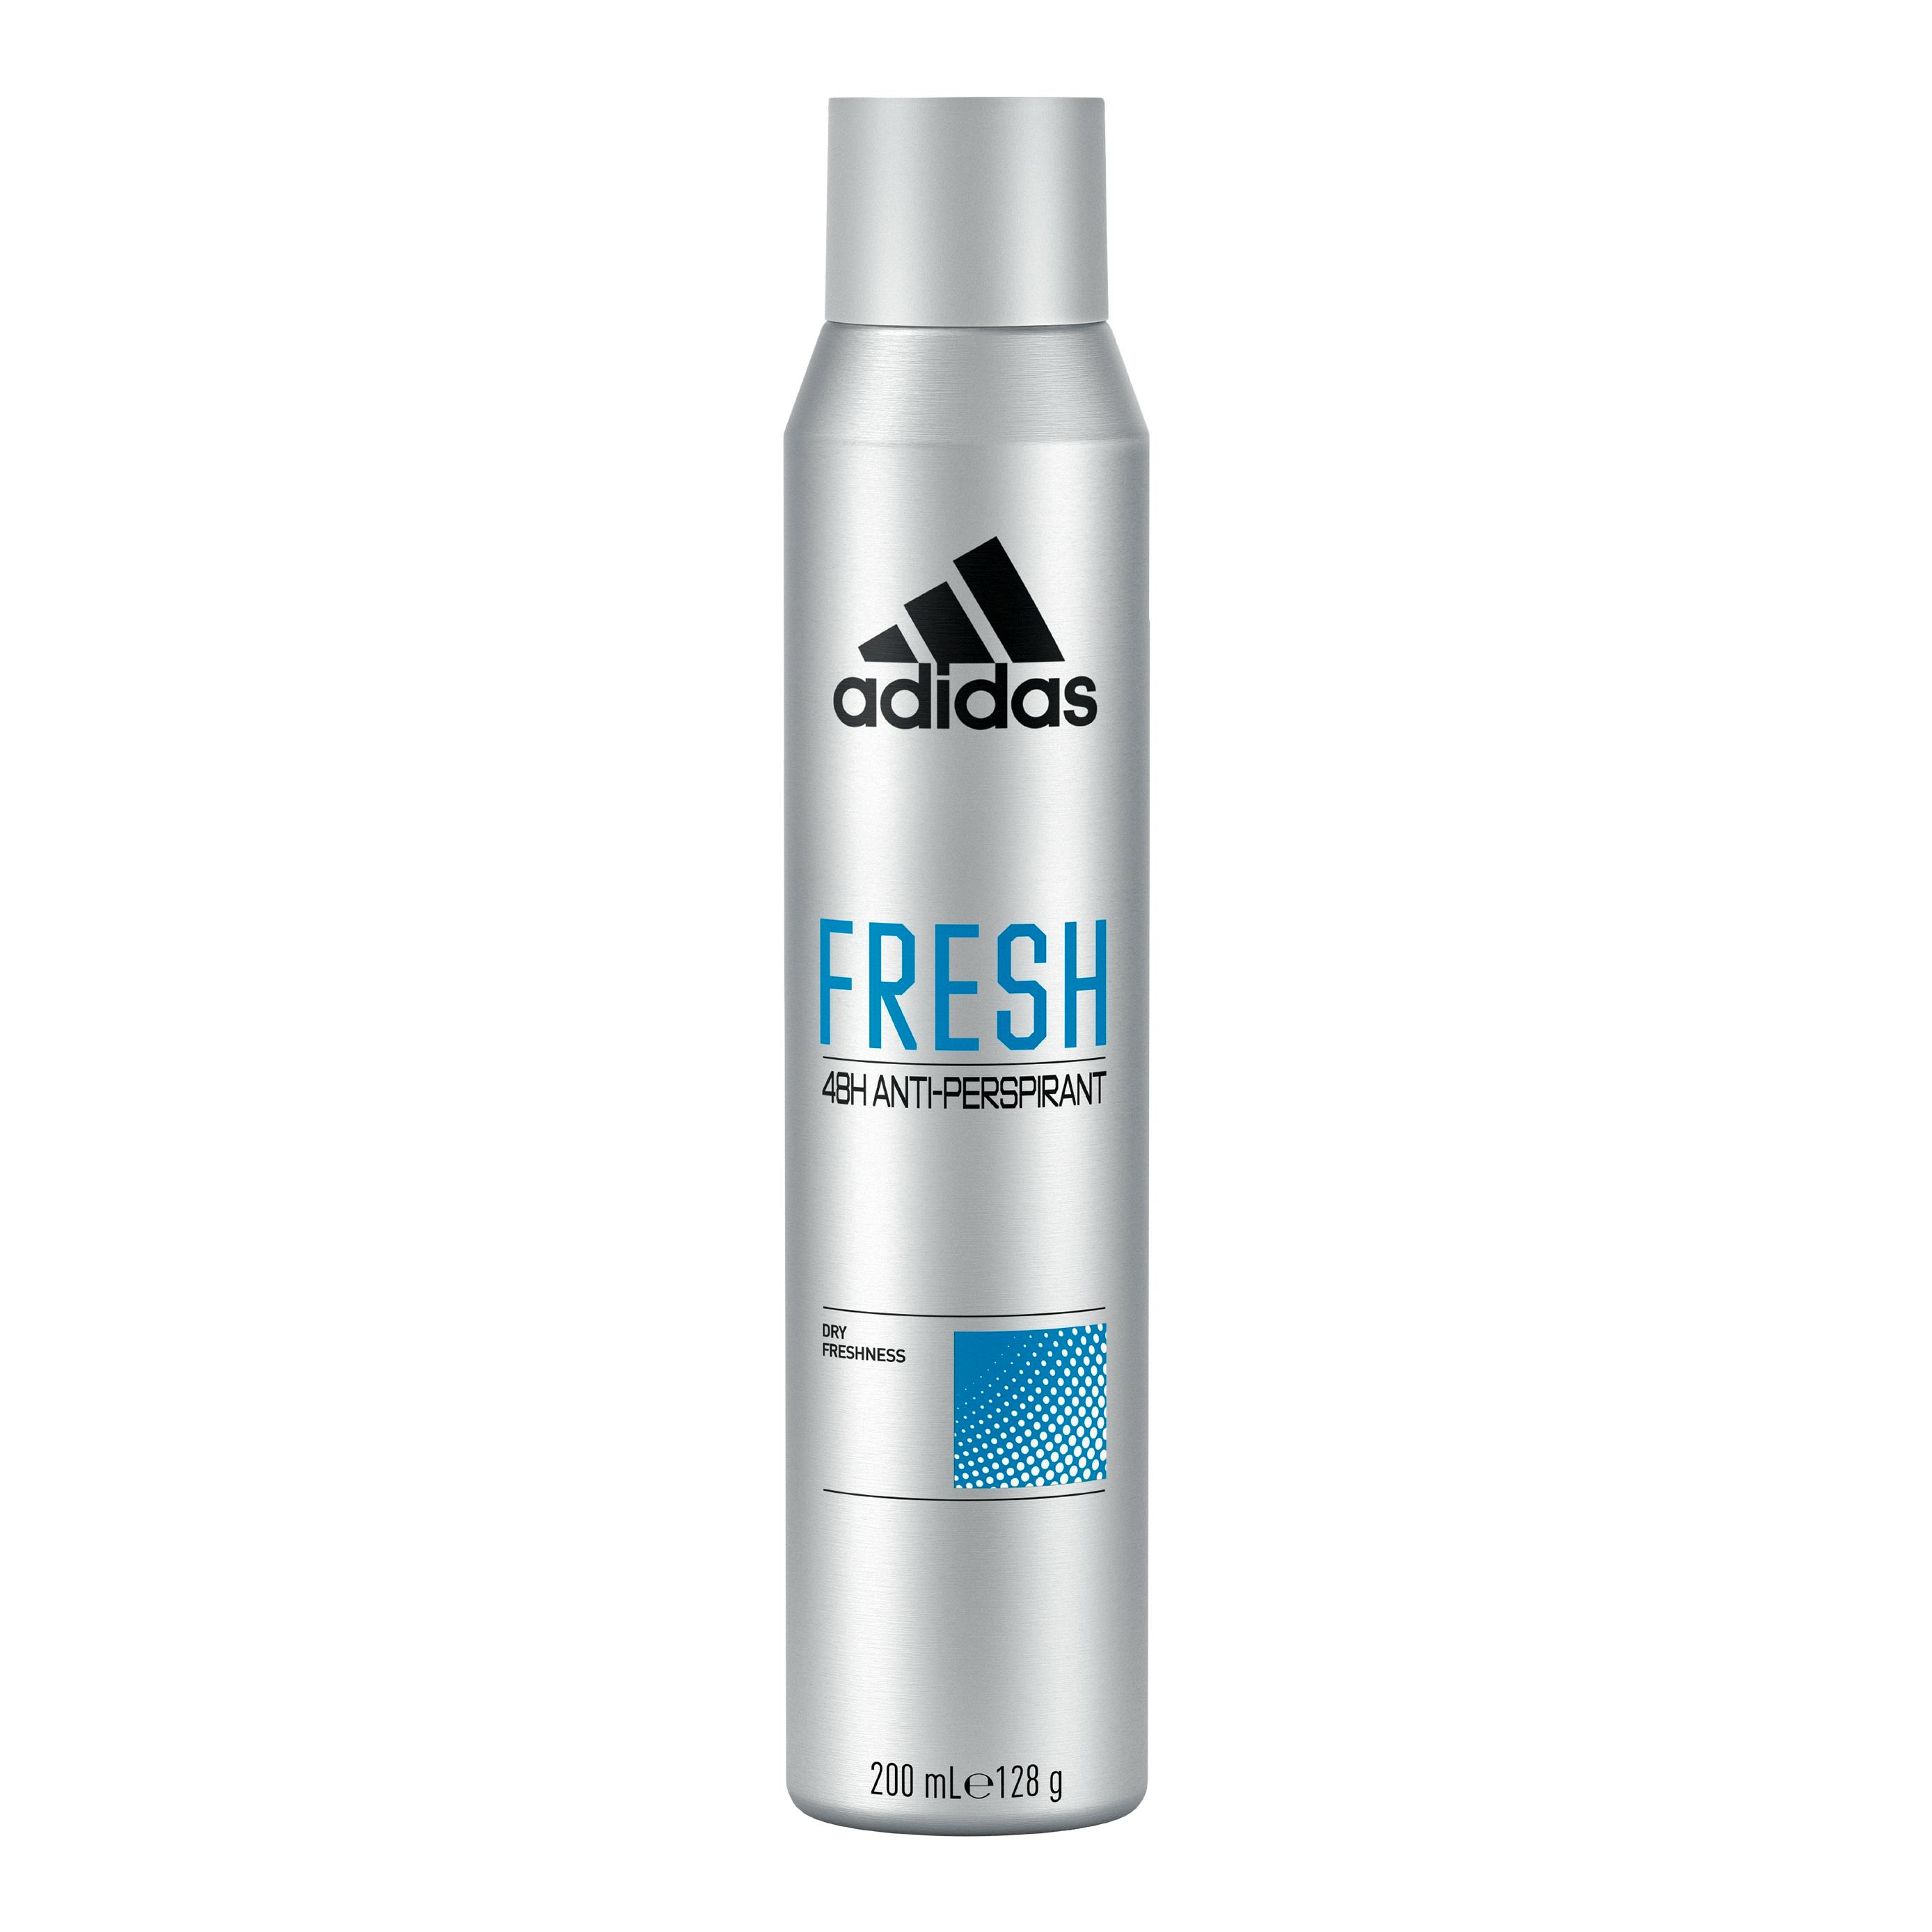 Pløje yderligere Blive opmærksom Adidas Anti-Perspirant Fresh Deodorant Spray 200 ml - 18.95 kr